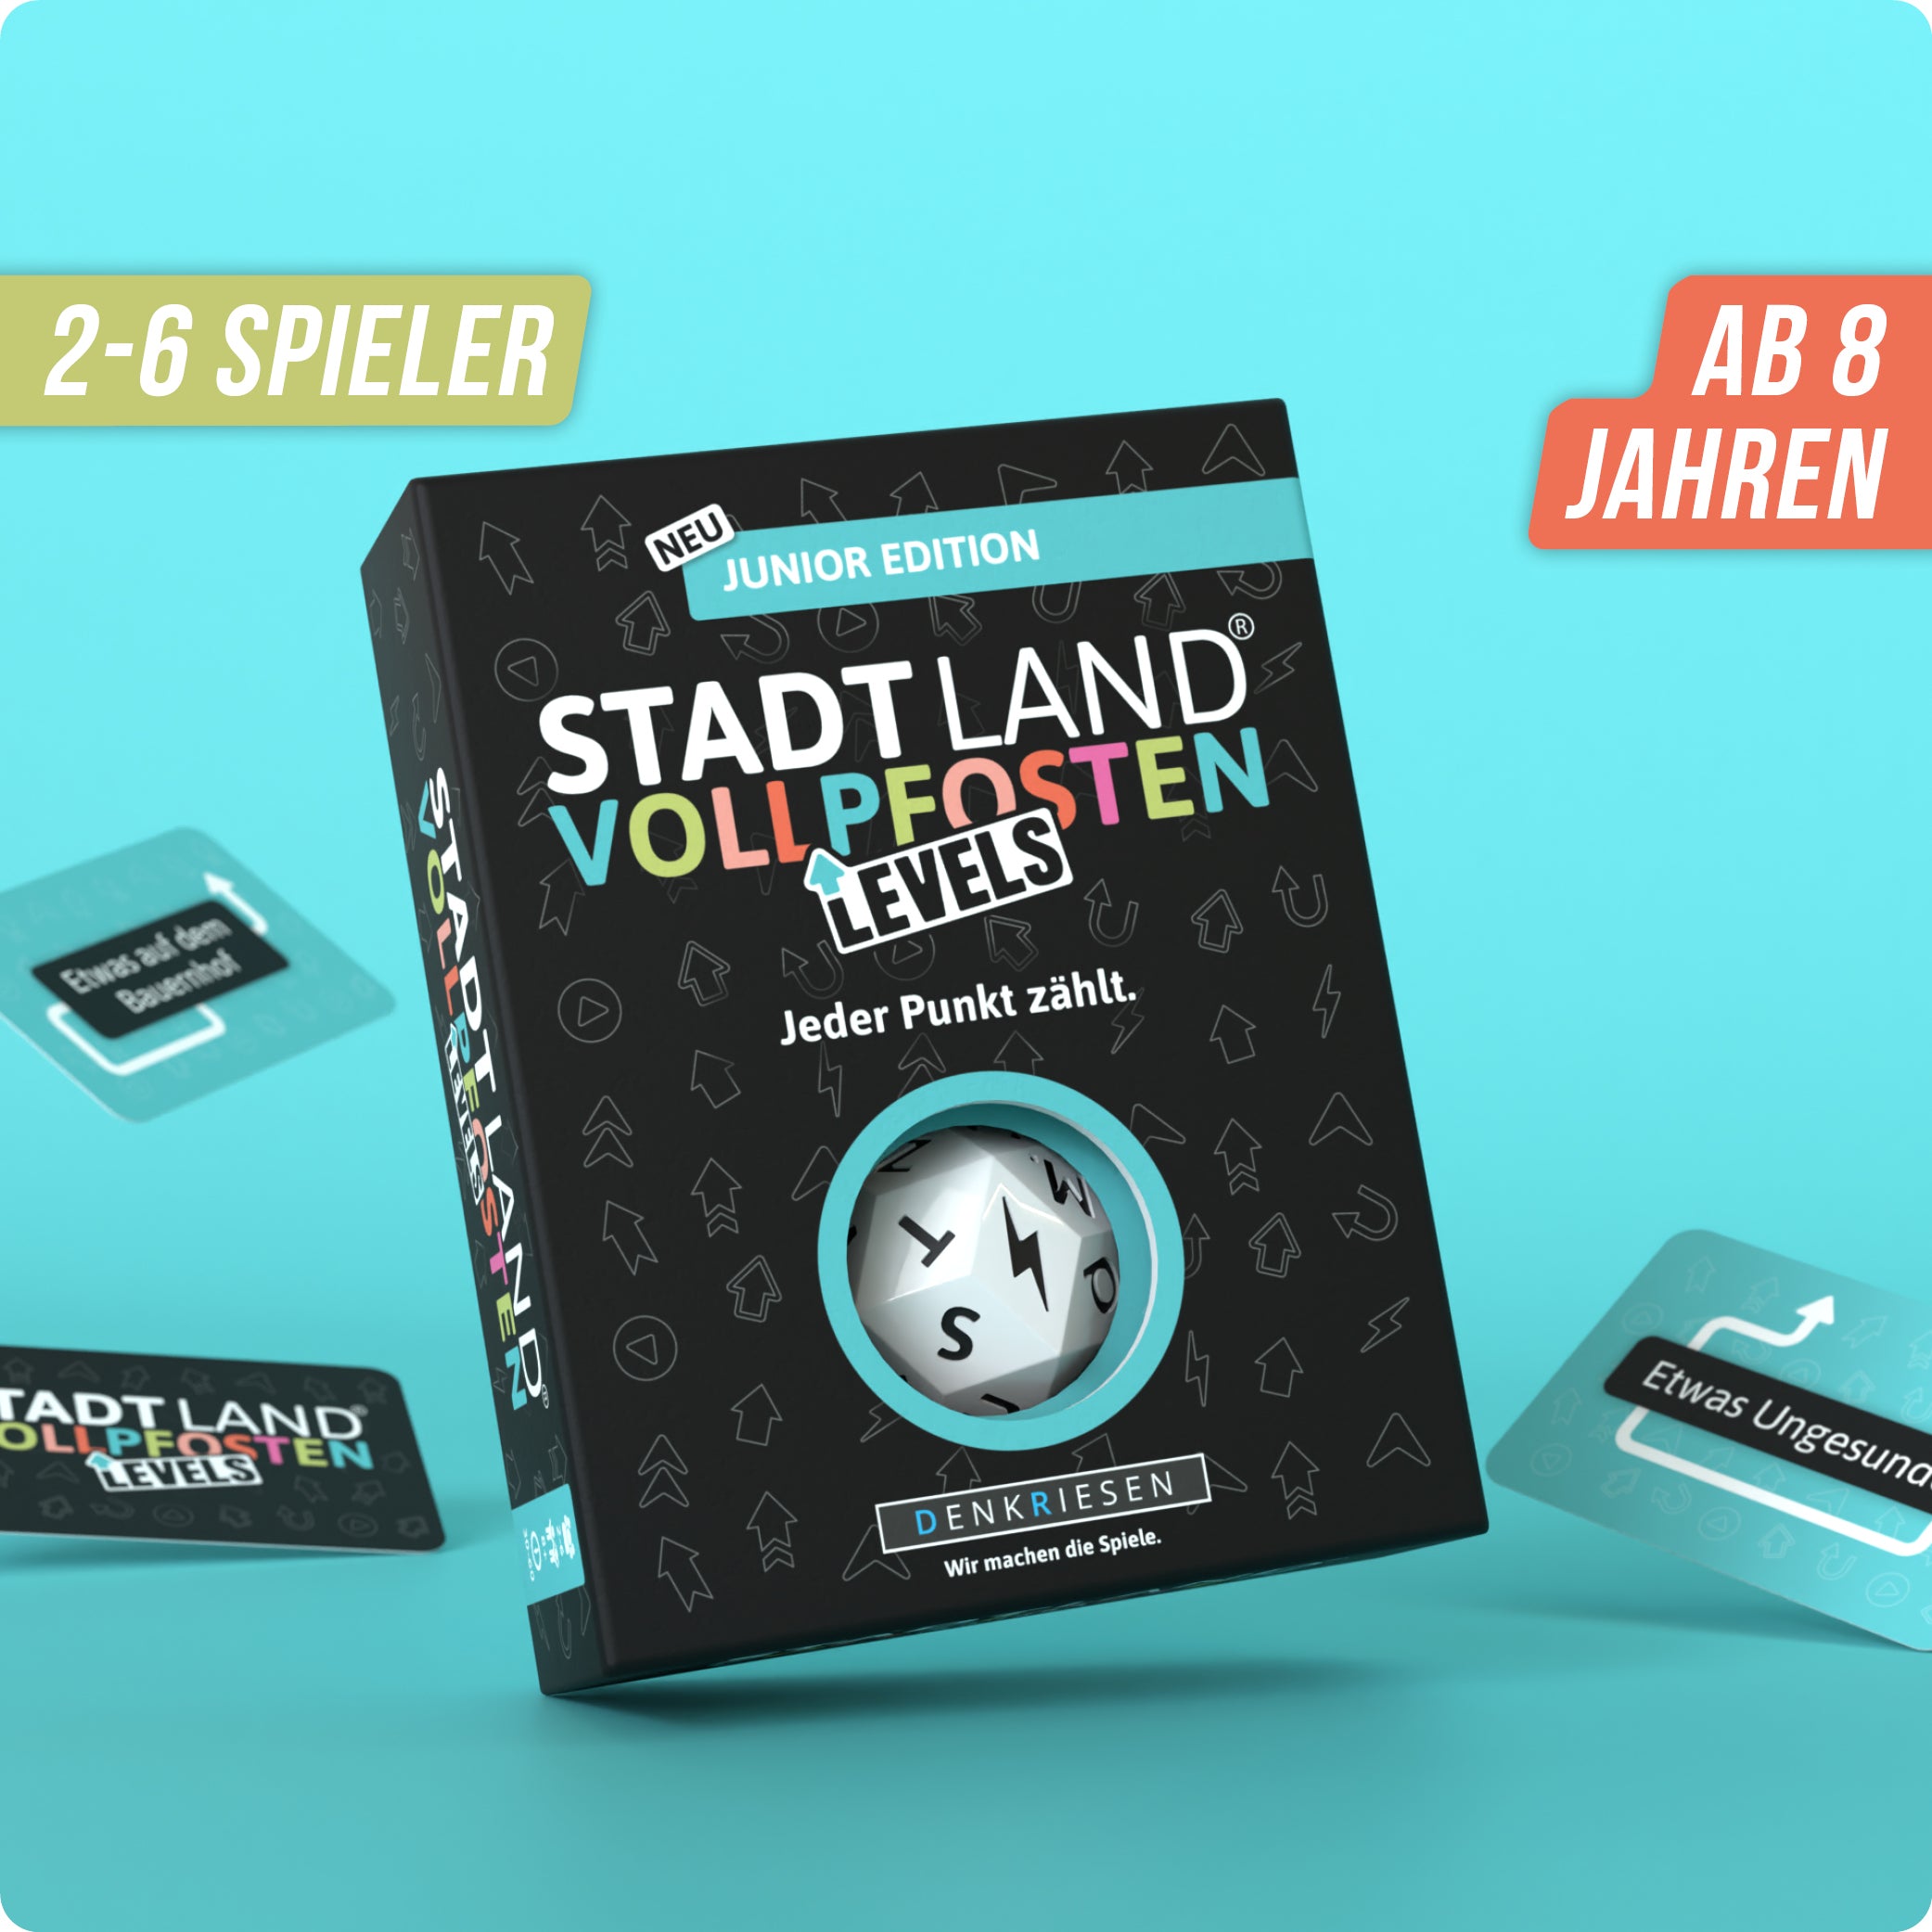 Stadt Land Vollpfosten® Junior Edition – "Jeder Punkt zählt." | Levels